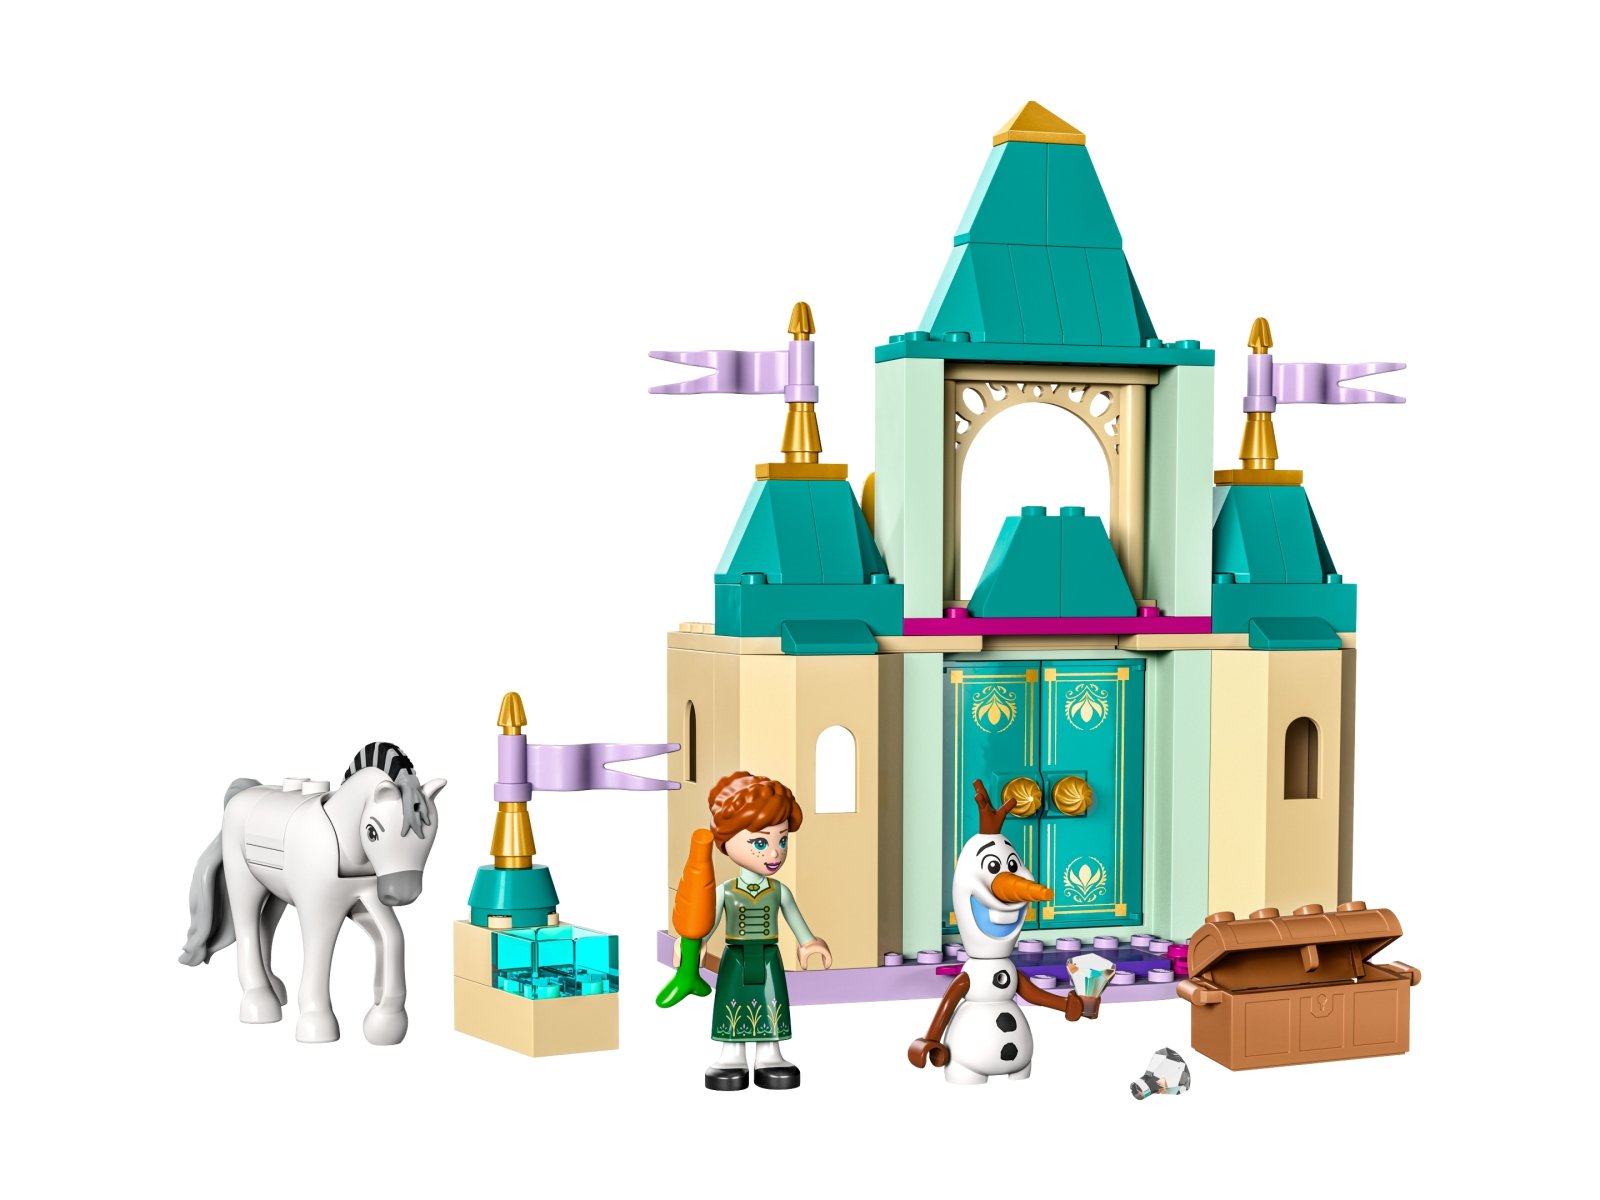 LEGO 43204 Zabawa w zamku z Anną i Olafem